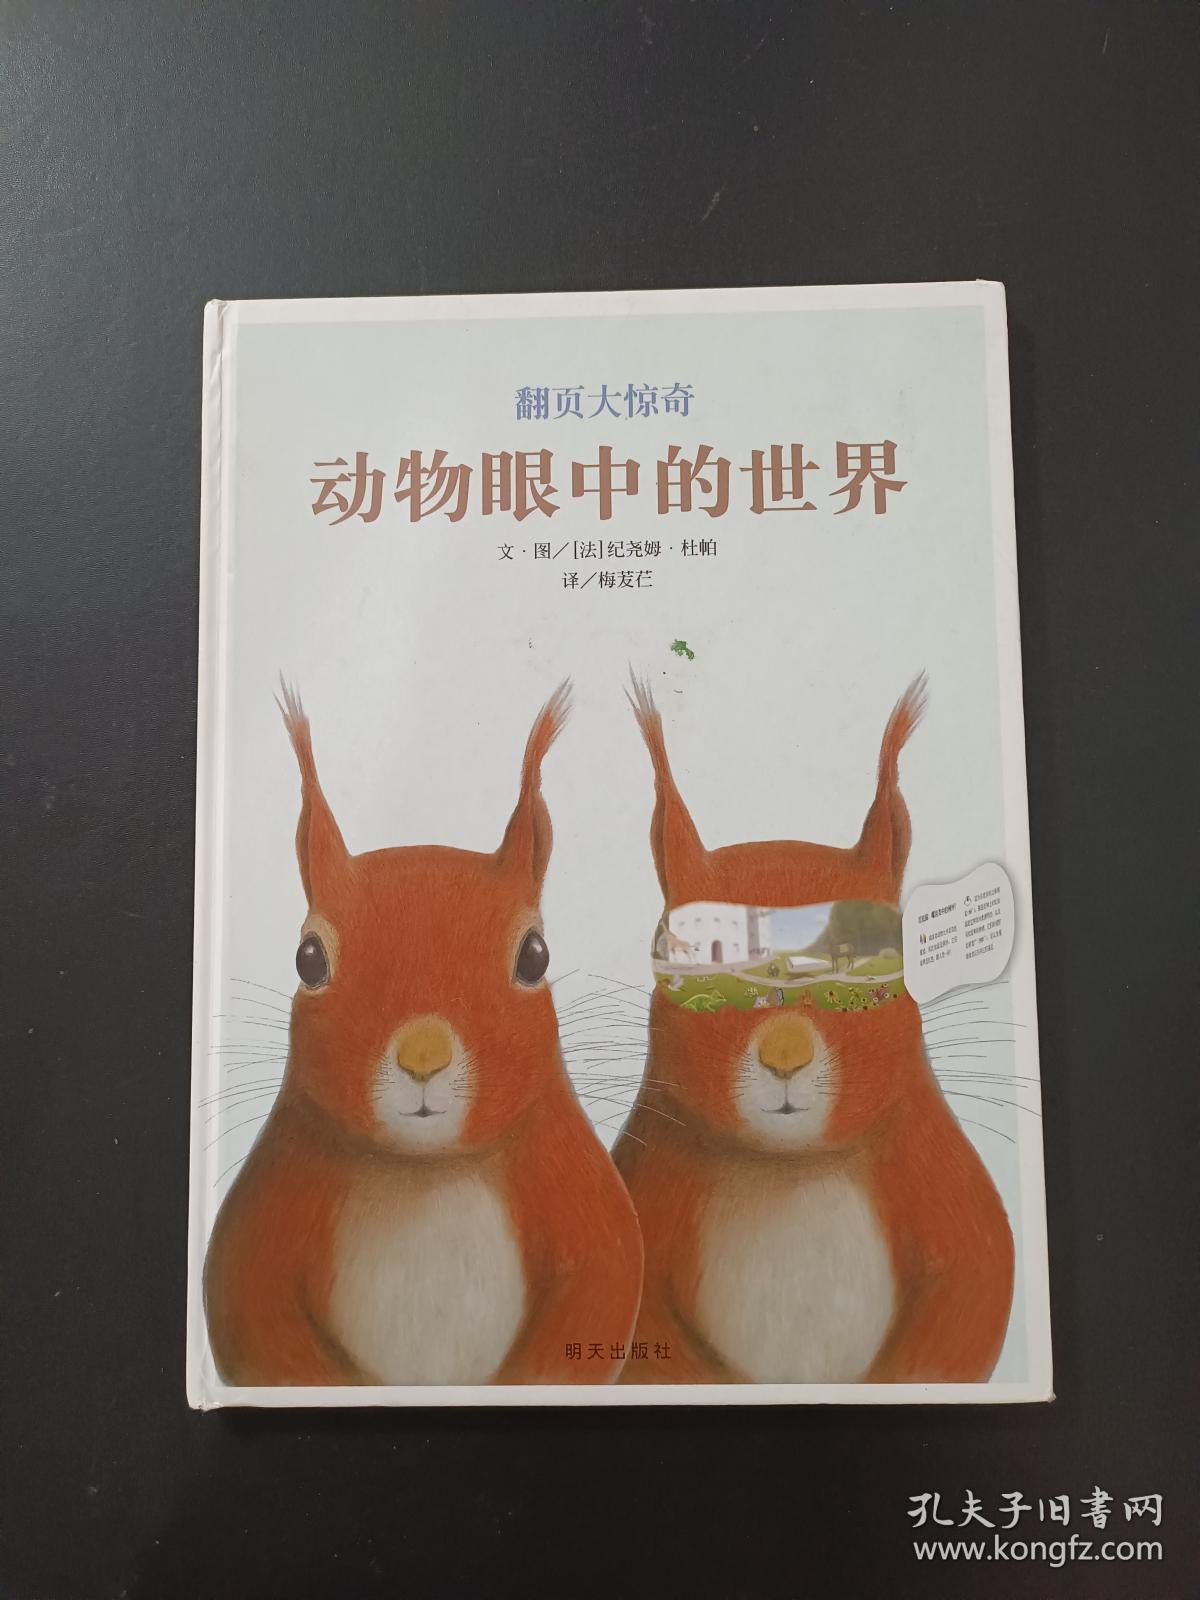 好奇心科普图画书:动物眼中的梵高名画-精品畅销书-接力出版社